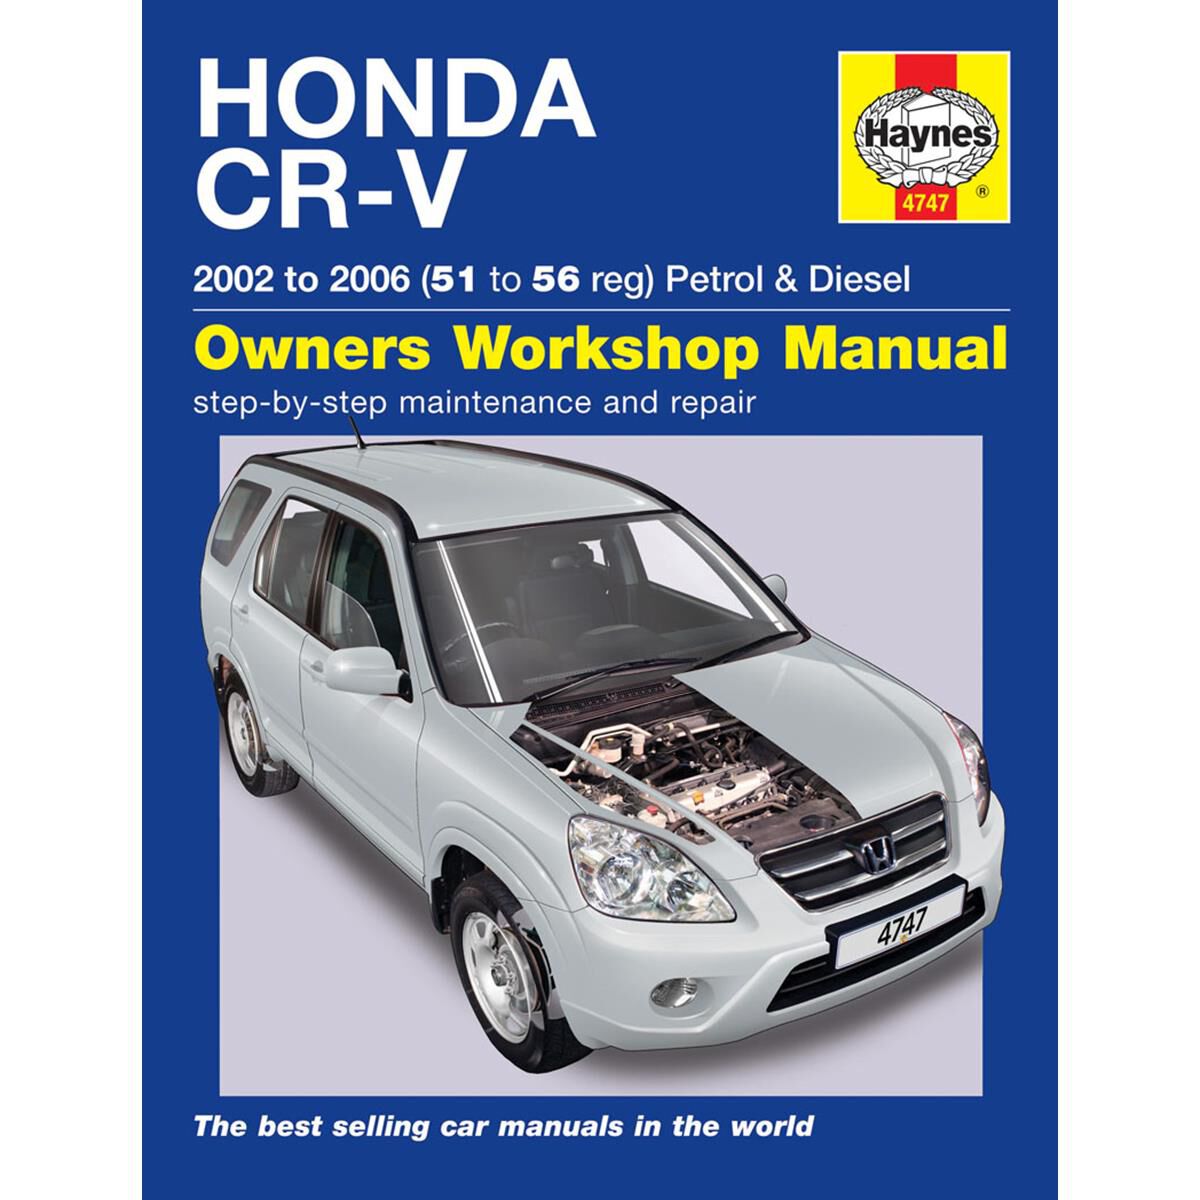 Honda CR-V Reparación Manual Taller Haynes Manual Manual De Servicio 2002-2006 4747 